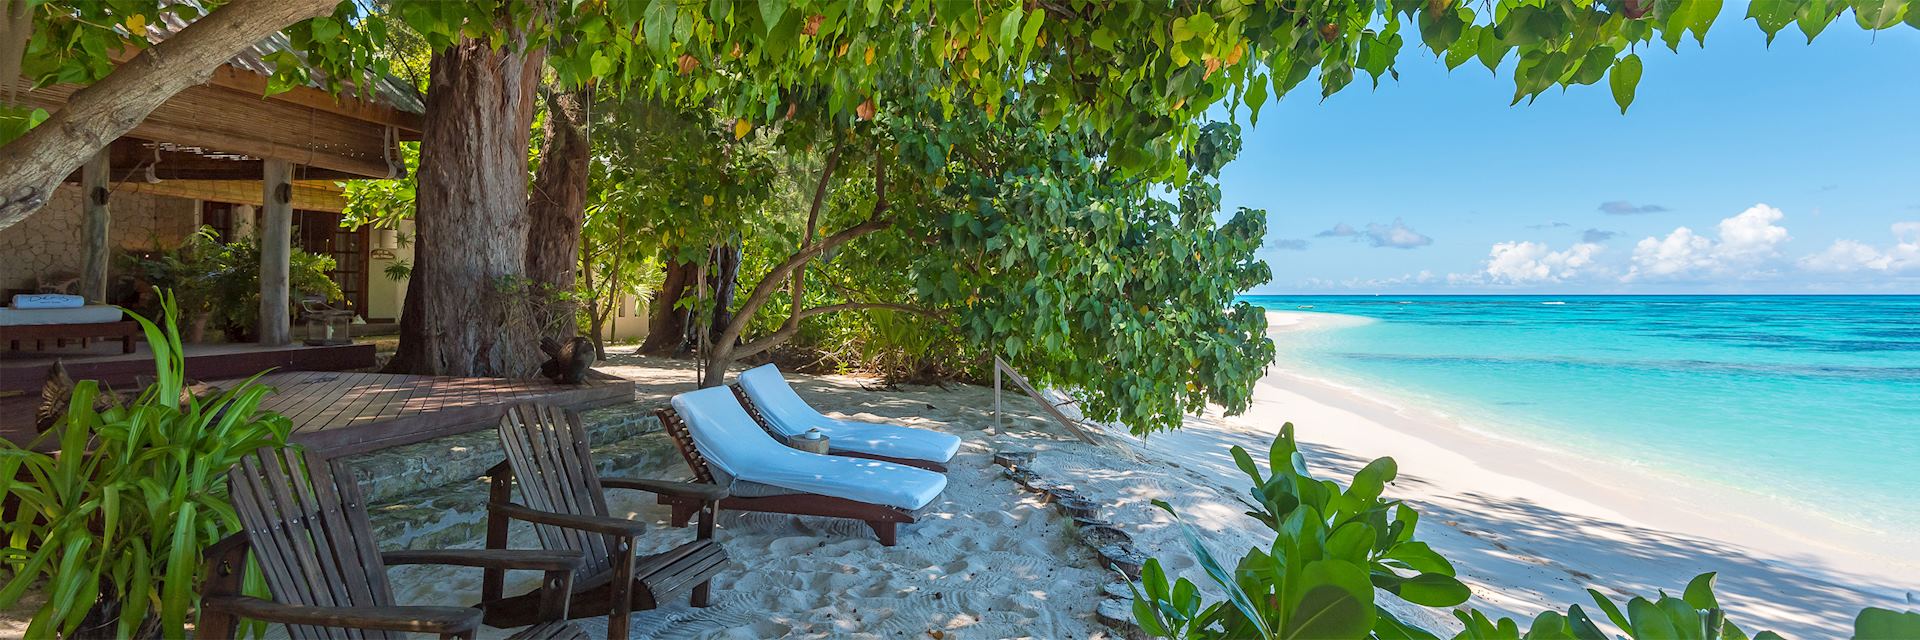 Beach Villa, Denis Private Island